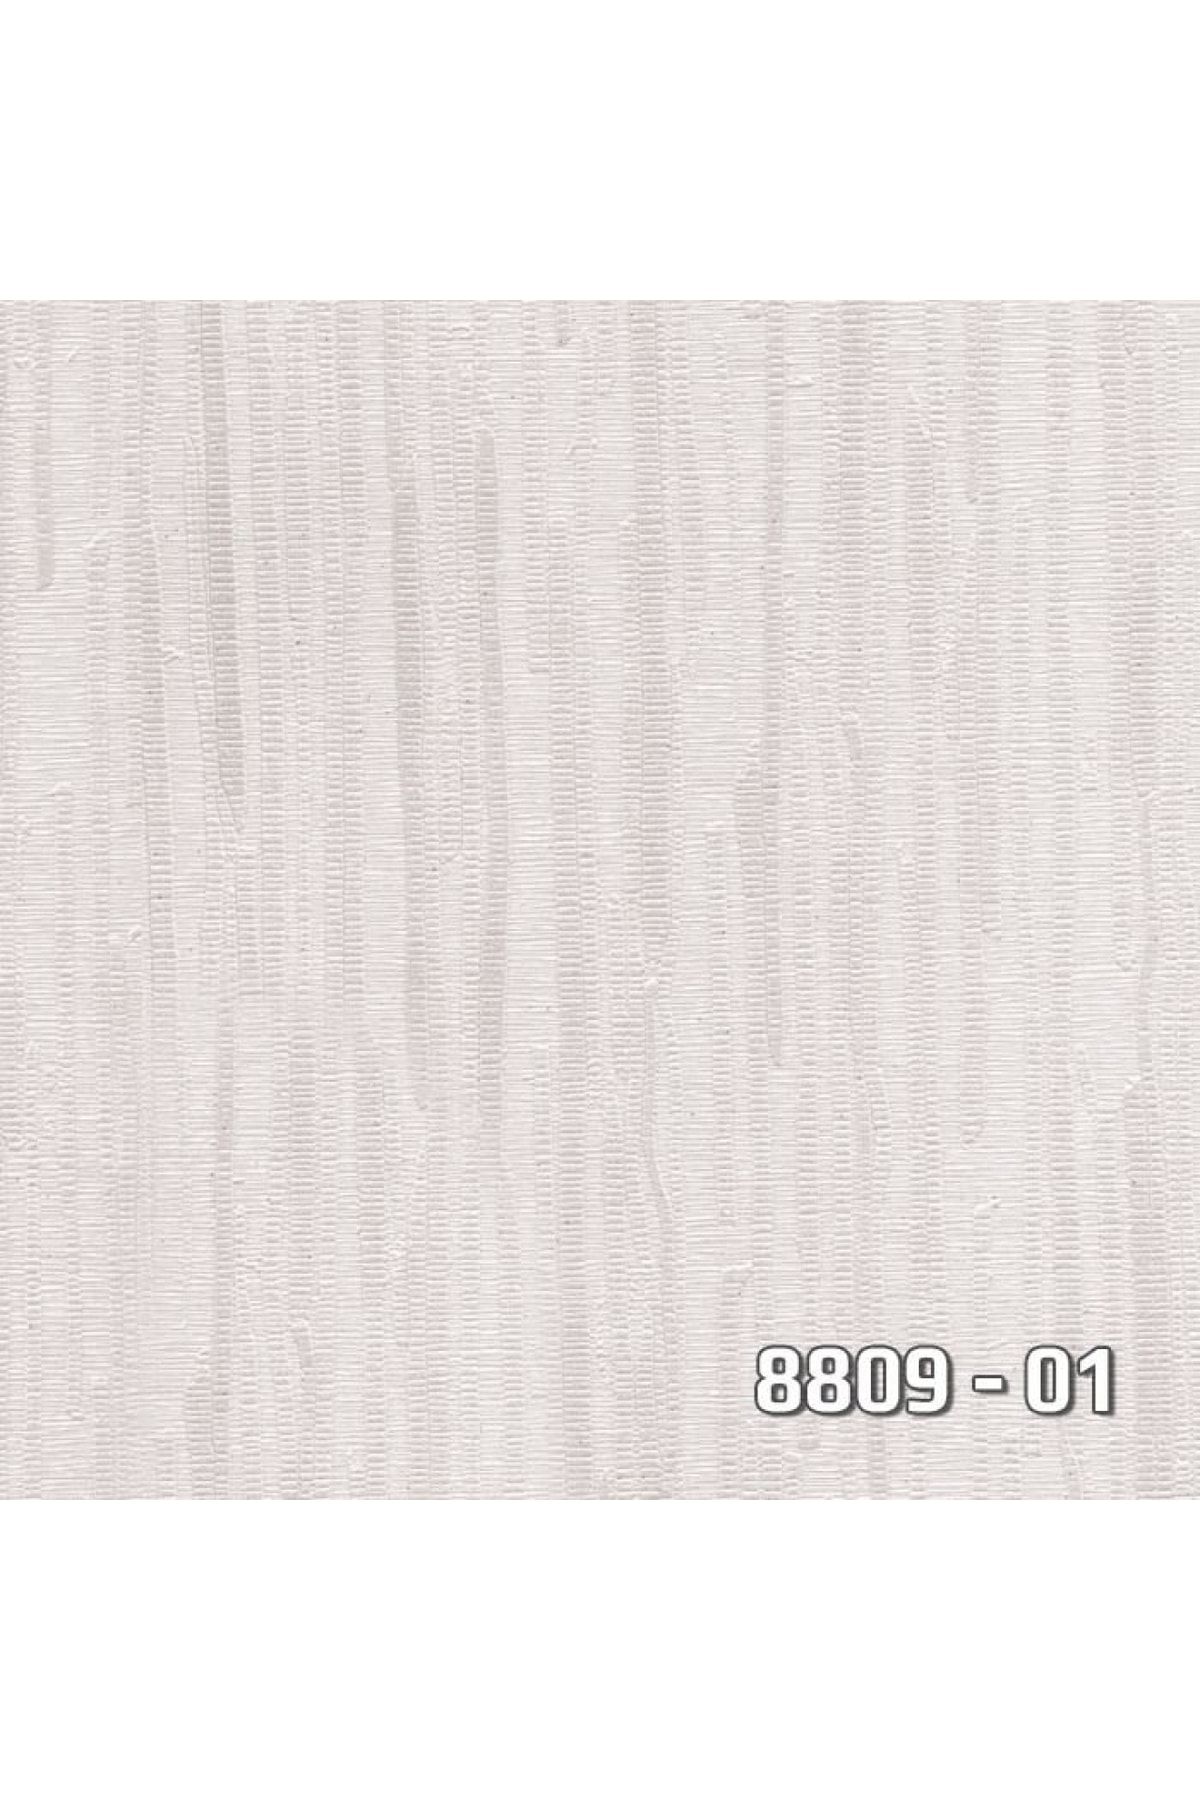 Decowall Decoparati Çizgili Gri Royal Port Duvar Kağıdı 8809-01